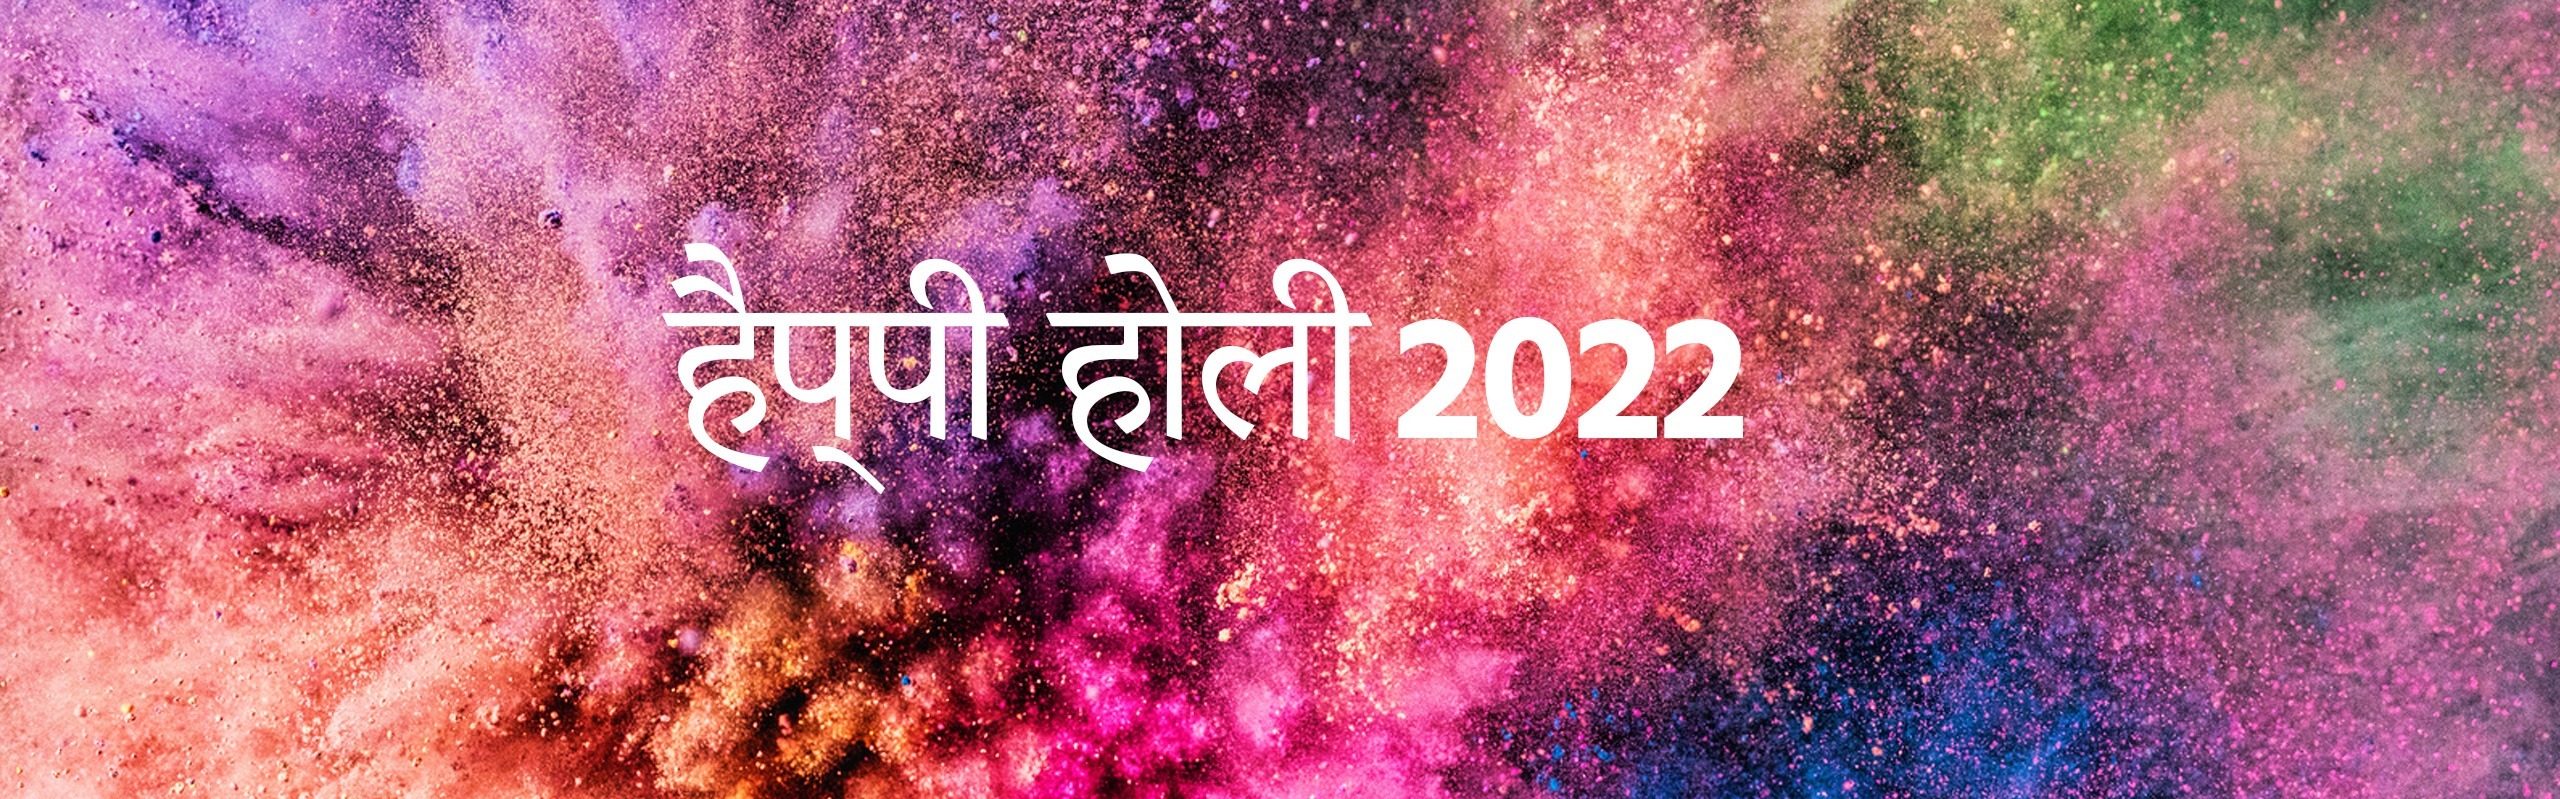 Happy Holi 2022 in Hindi होली की शुभकामनाएं हिंदी में